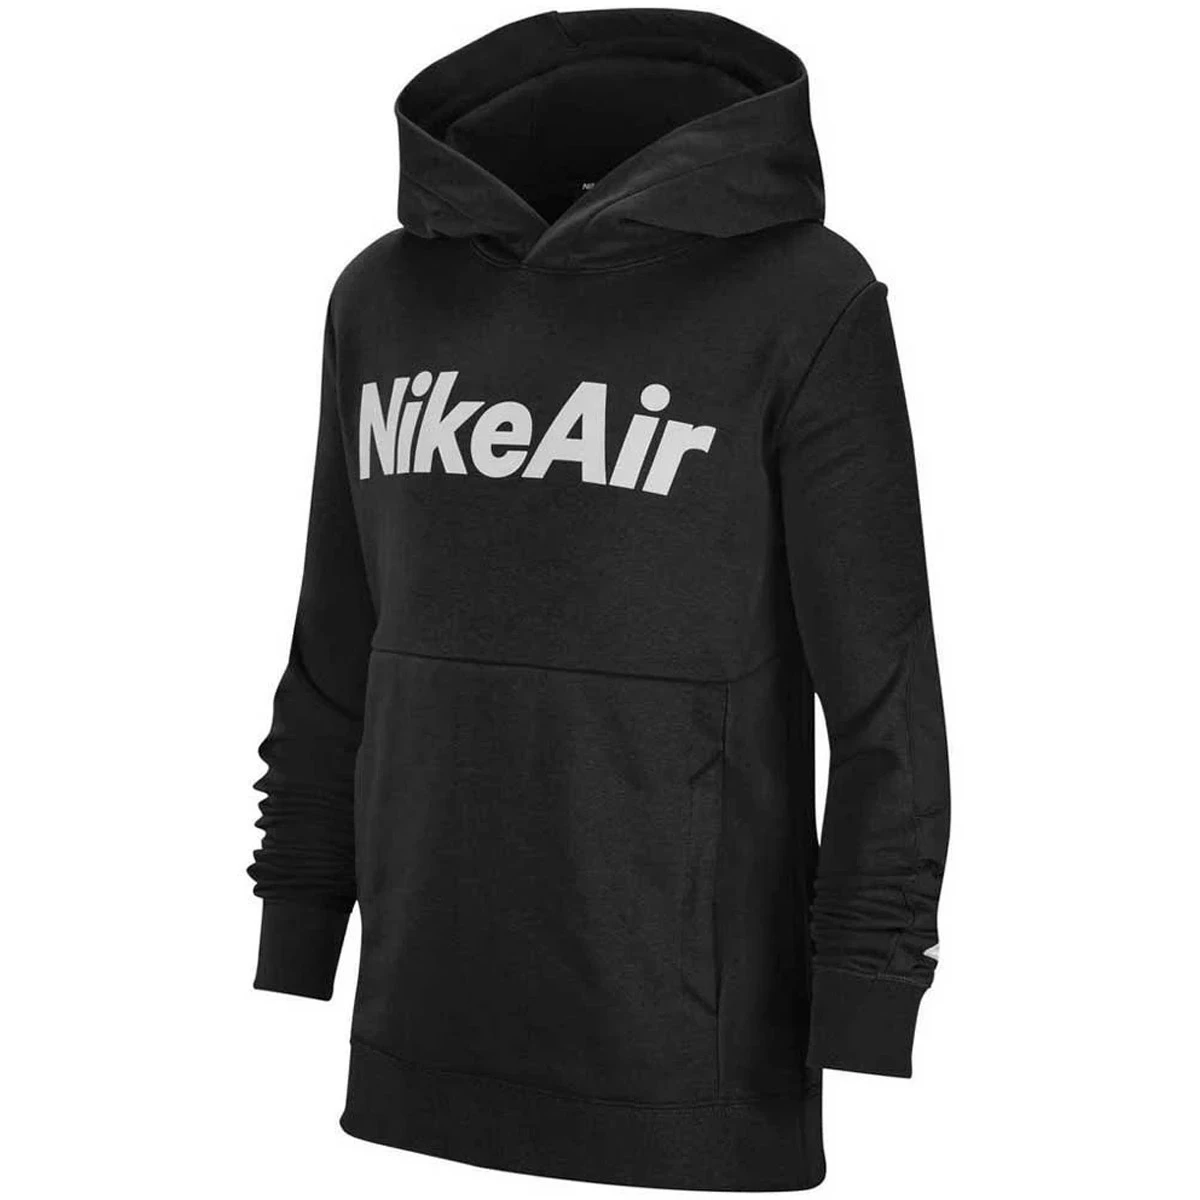 Afbeelding van Nike Air hoodie